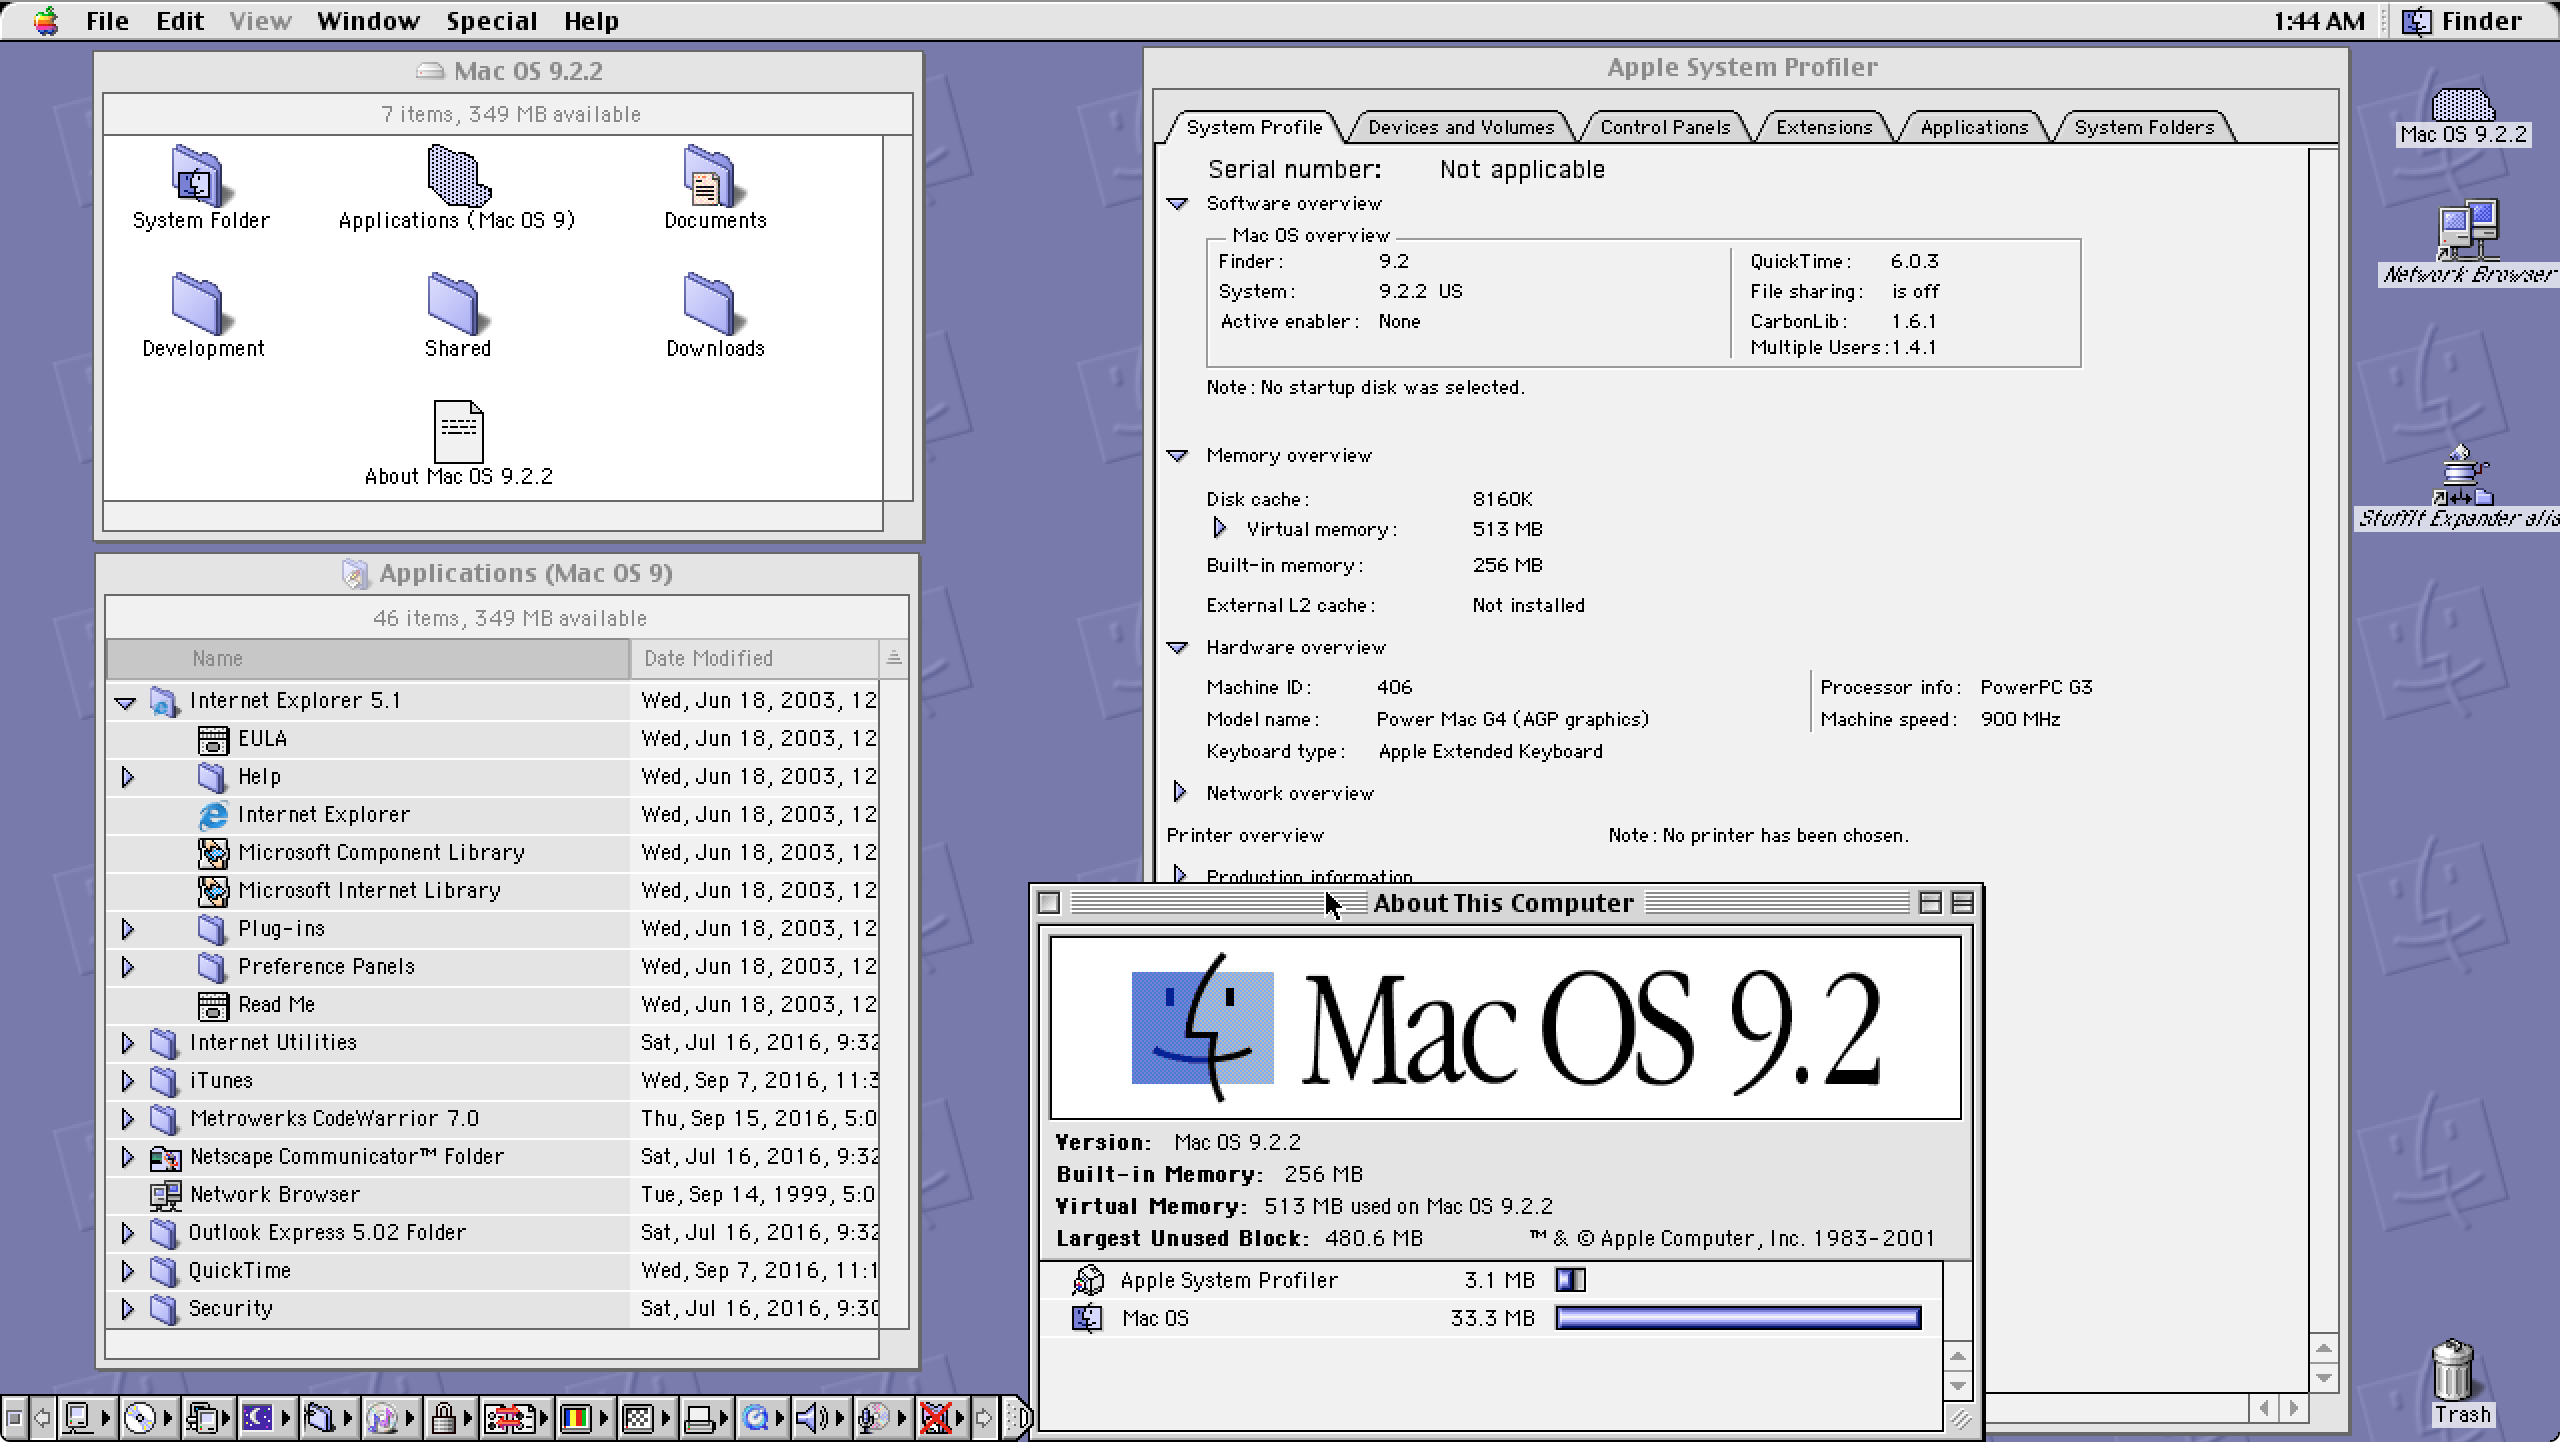 naomi board emulator mac